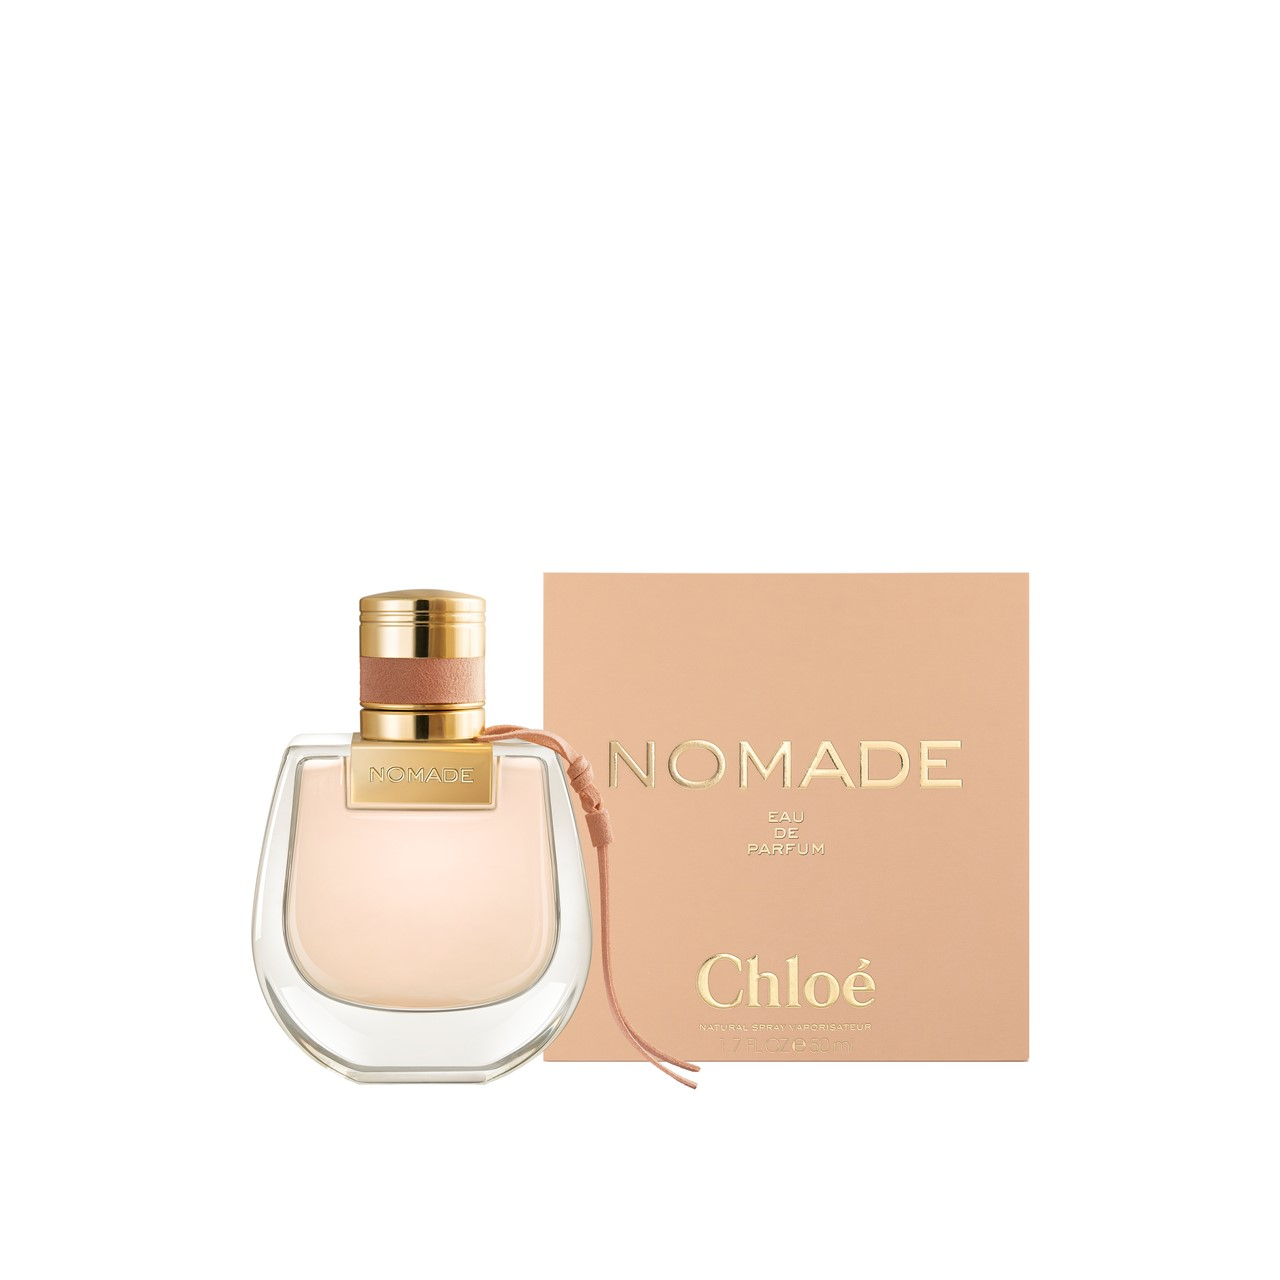 Chloe Releases New Fragrance Nomade